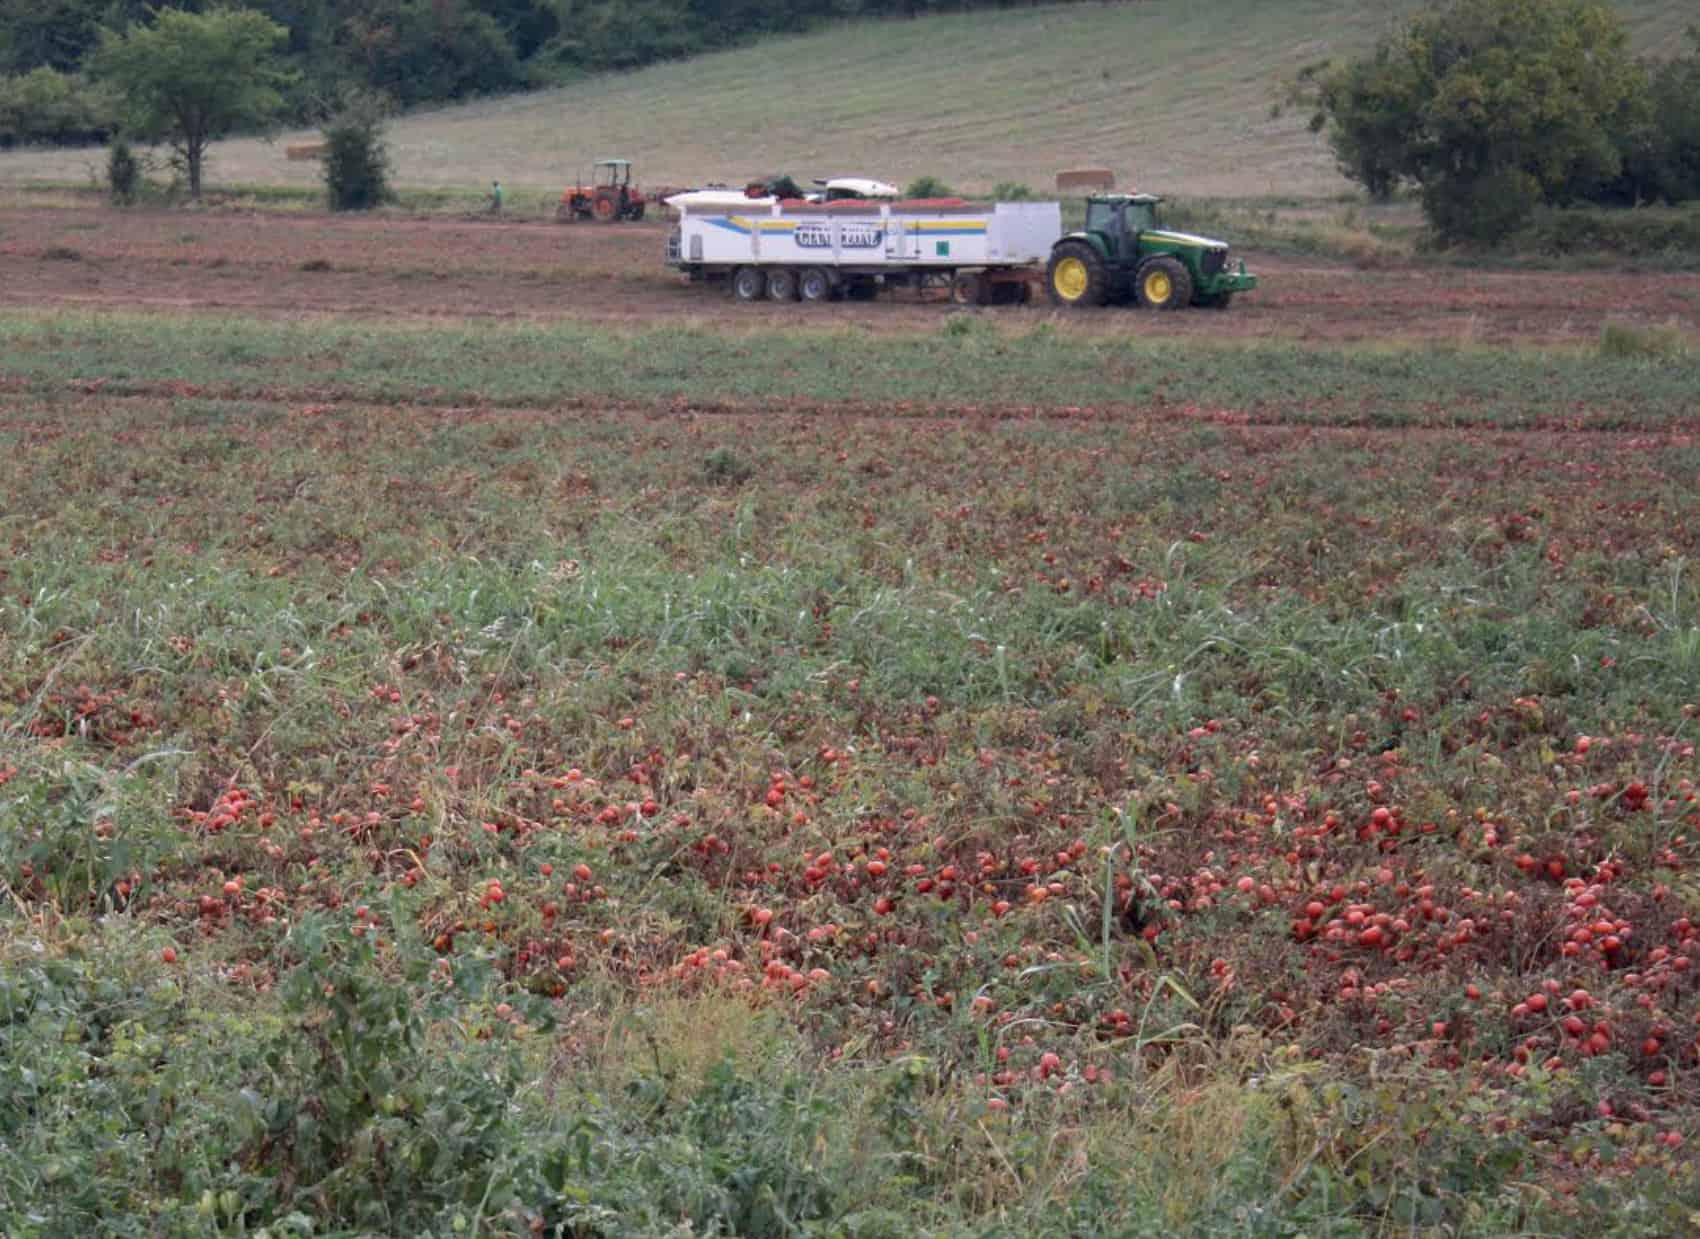 Tomato farm and a tractor